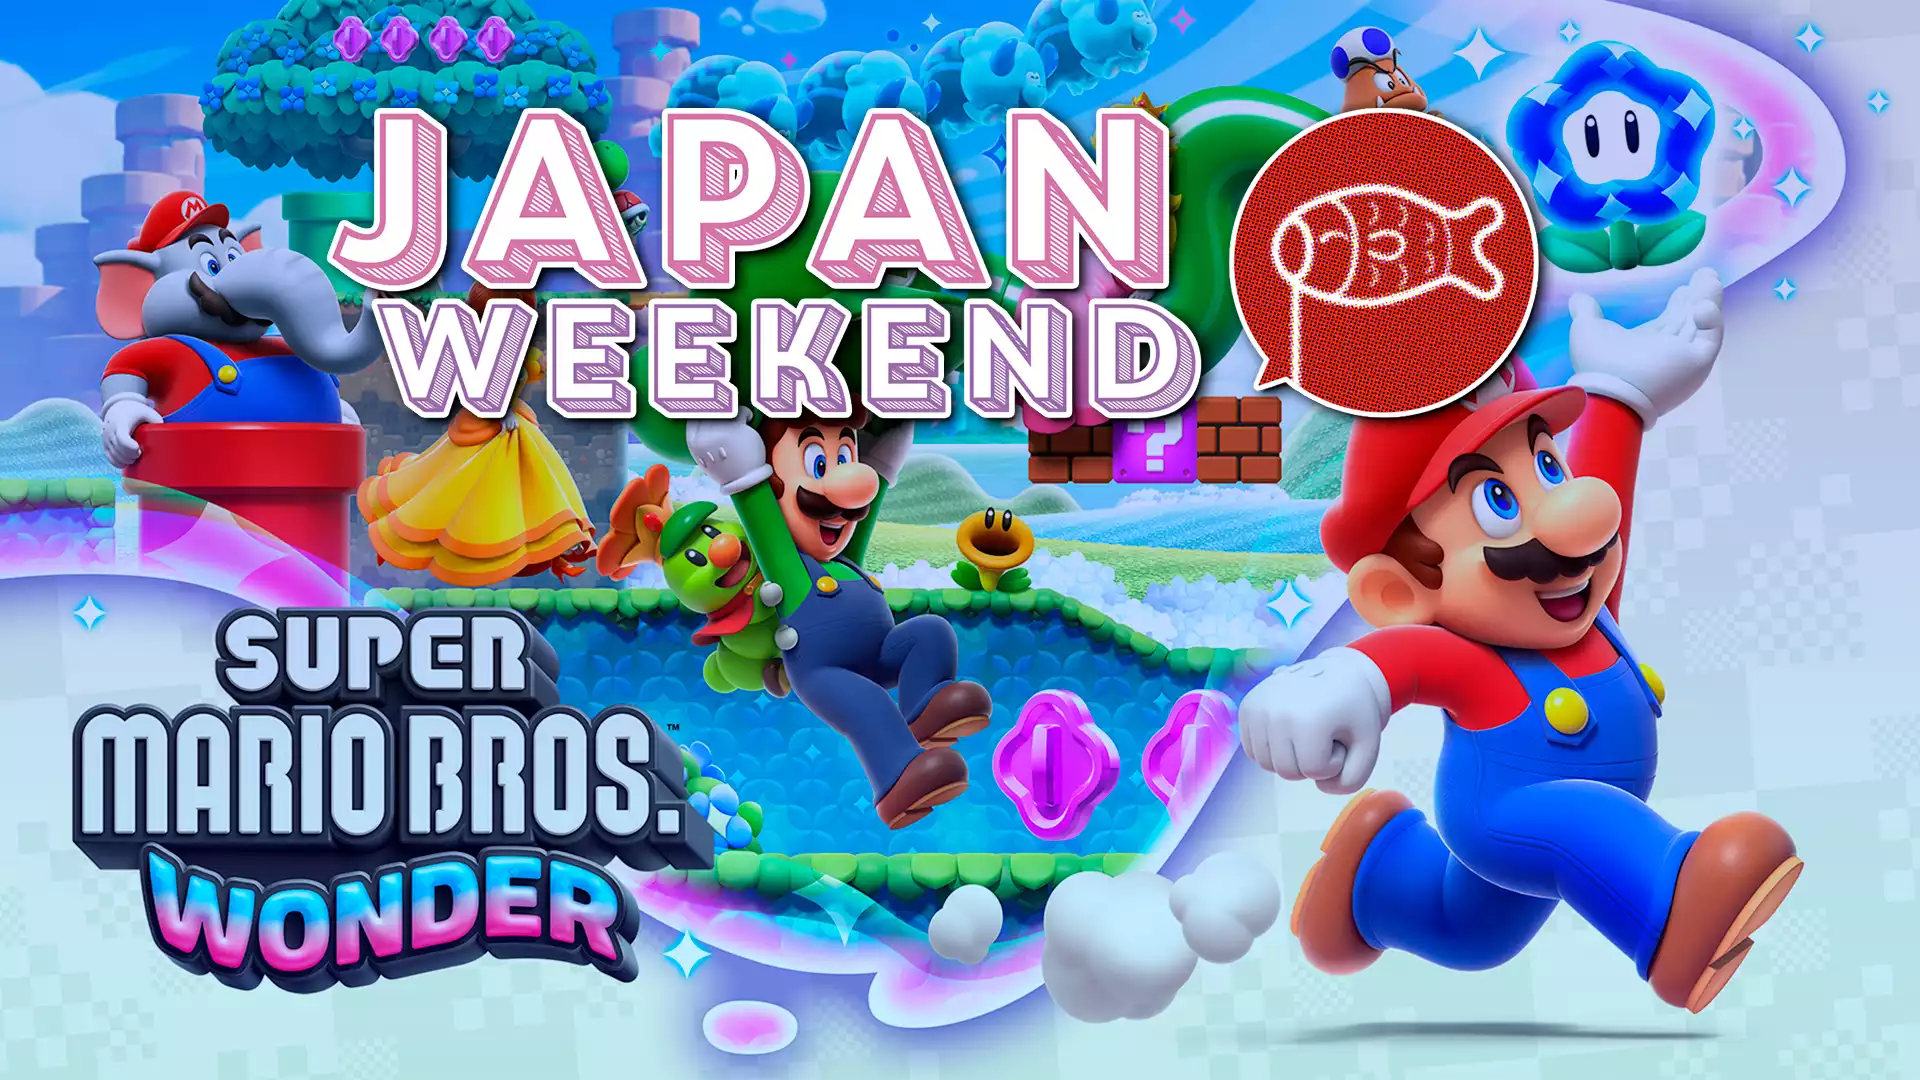 Mario Wonder viste de rojo la Japan Weekend de Madrid